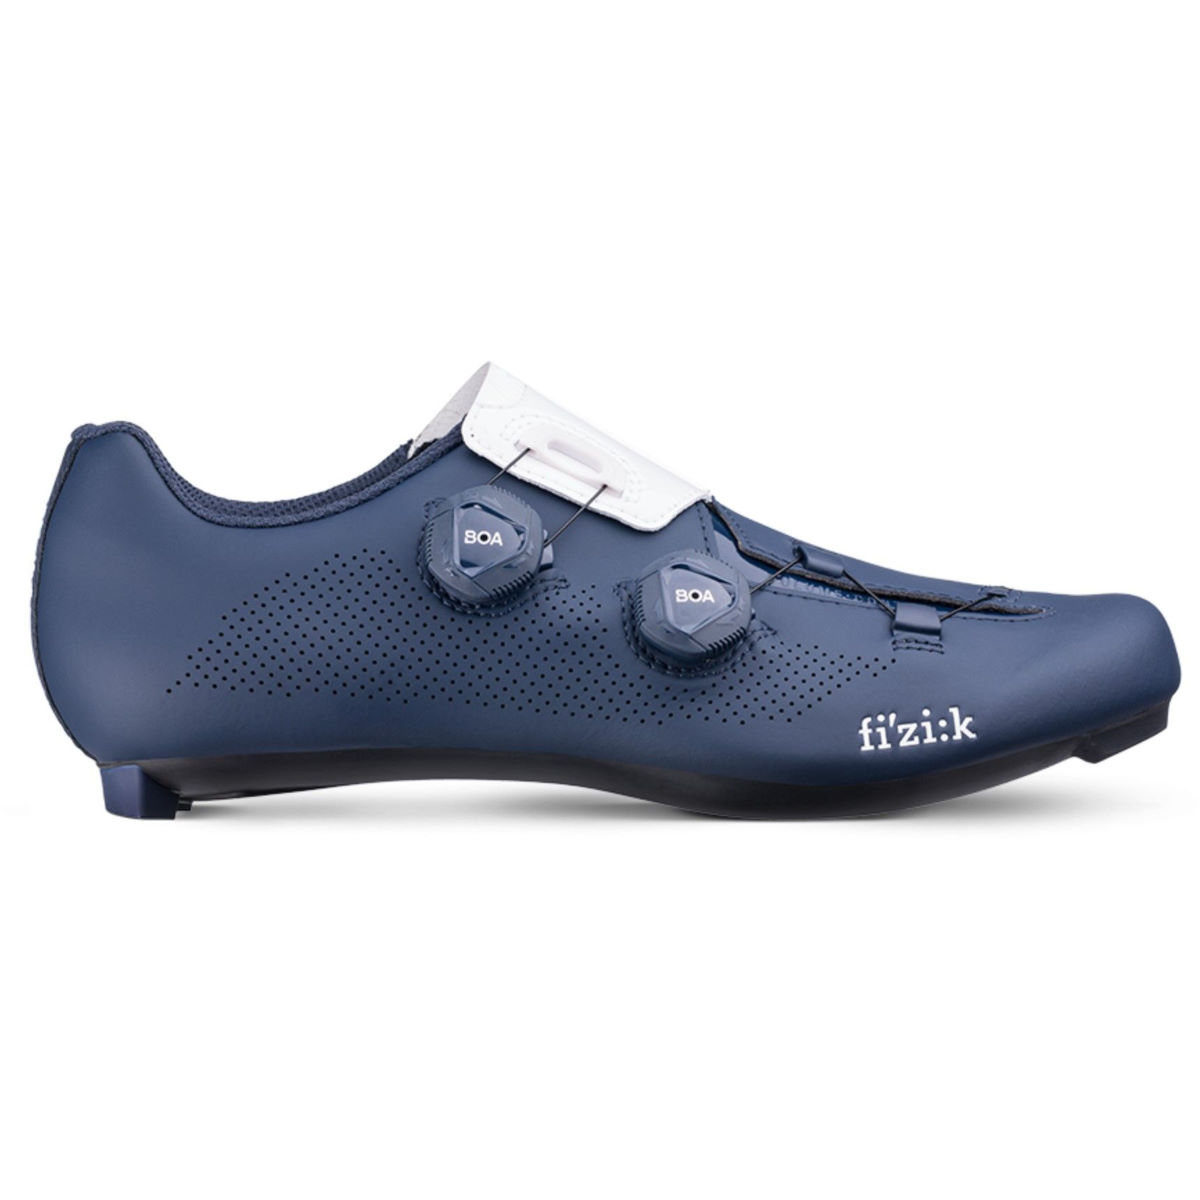 Zapatillas de carretera Fizik R3 Aria - Zapatillas de ciclismo